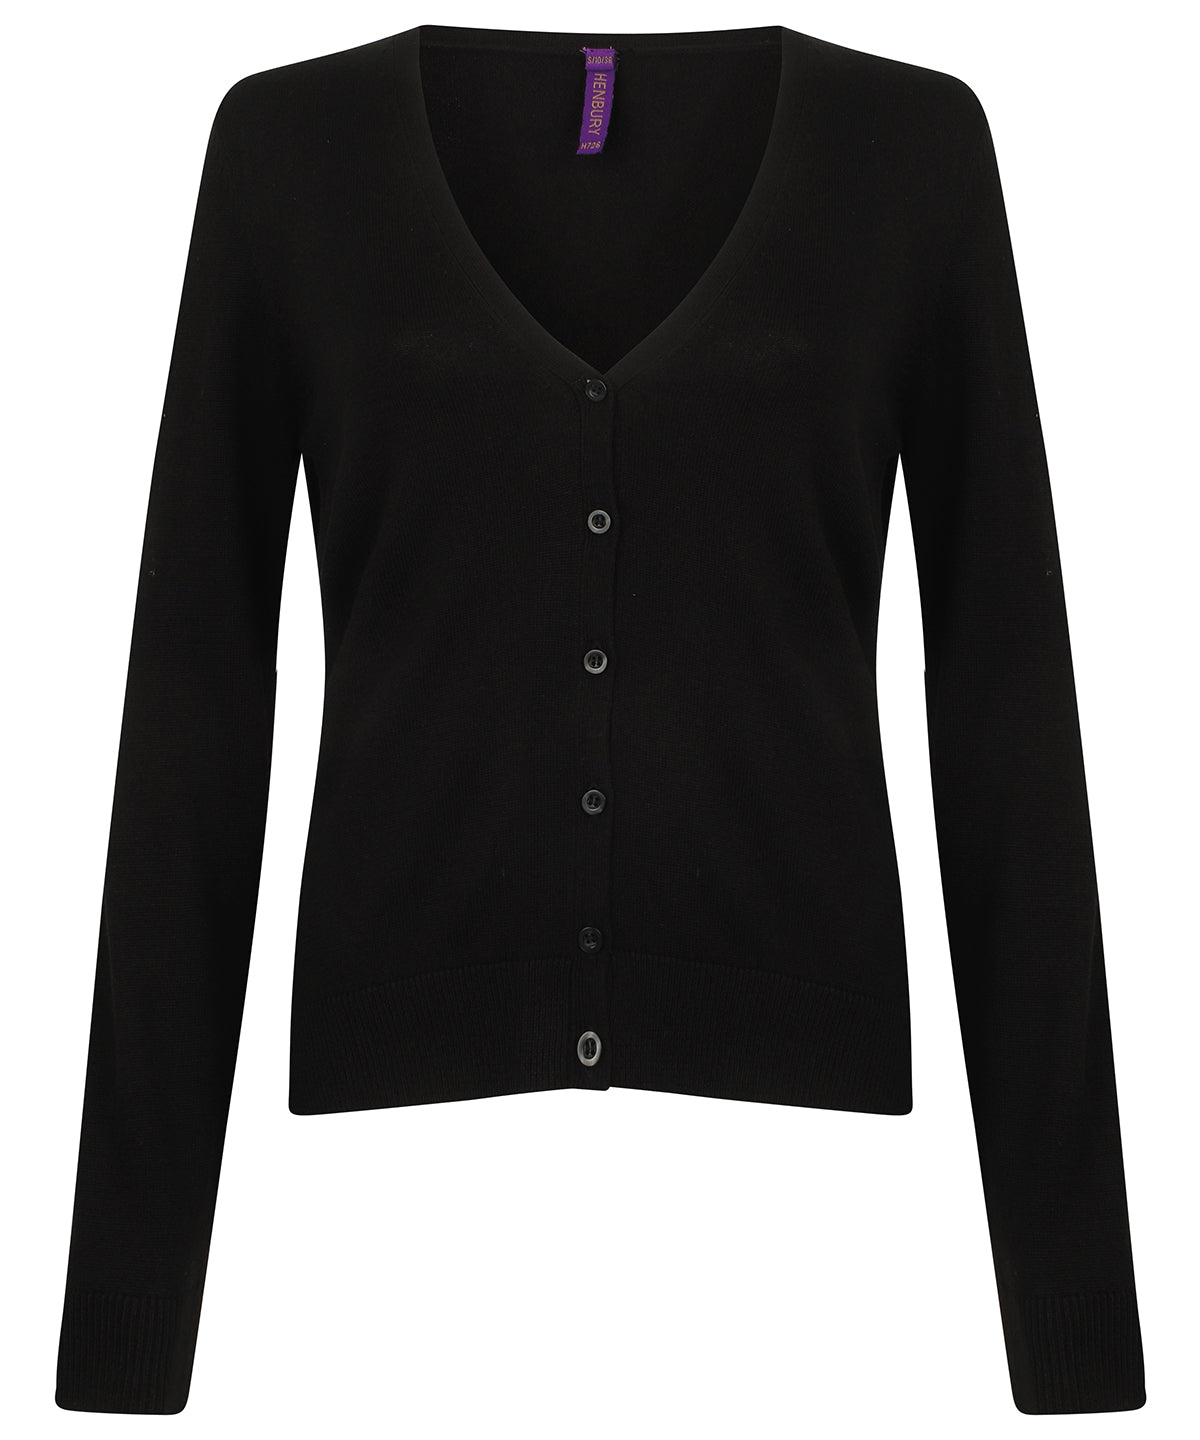 Personalised Cardigans - Black Henbury Women's v-neck cardigan